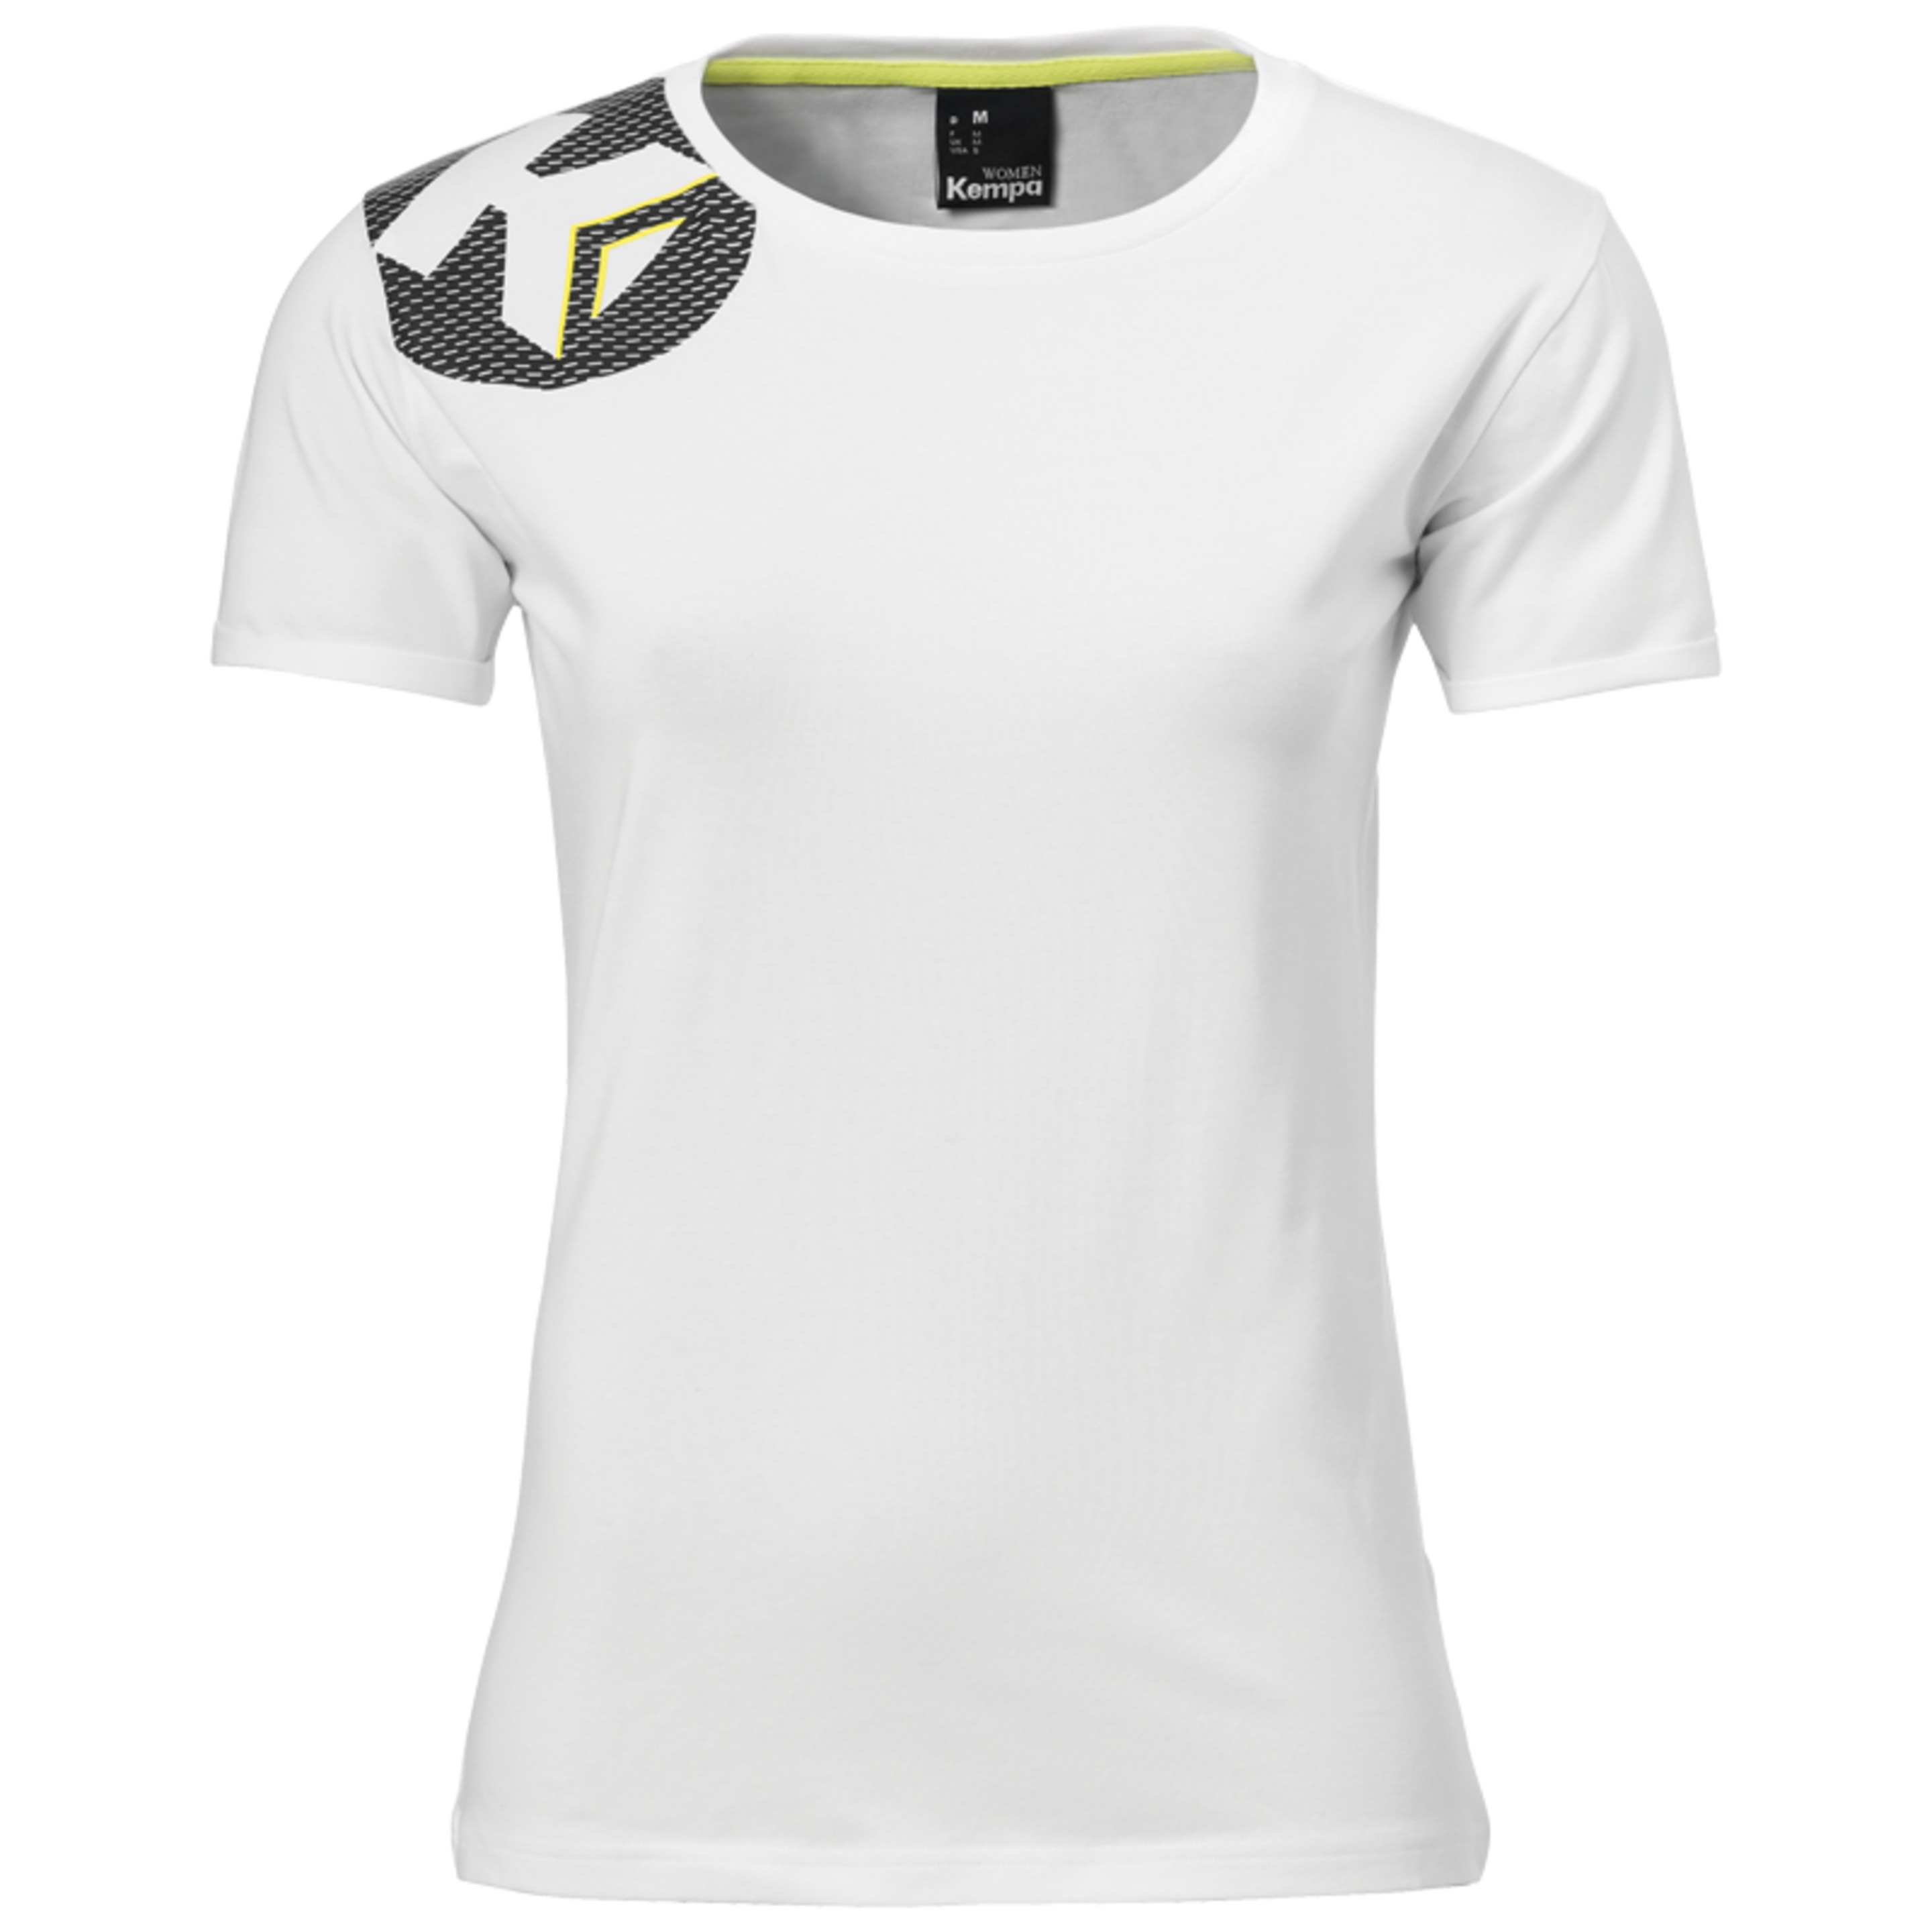 Core 2.0 T-shirt Women Blanco Kempa - blanco - 